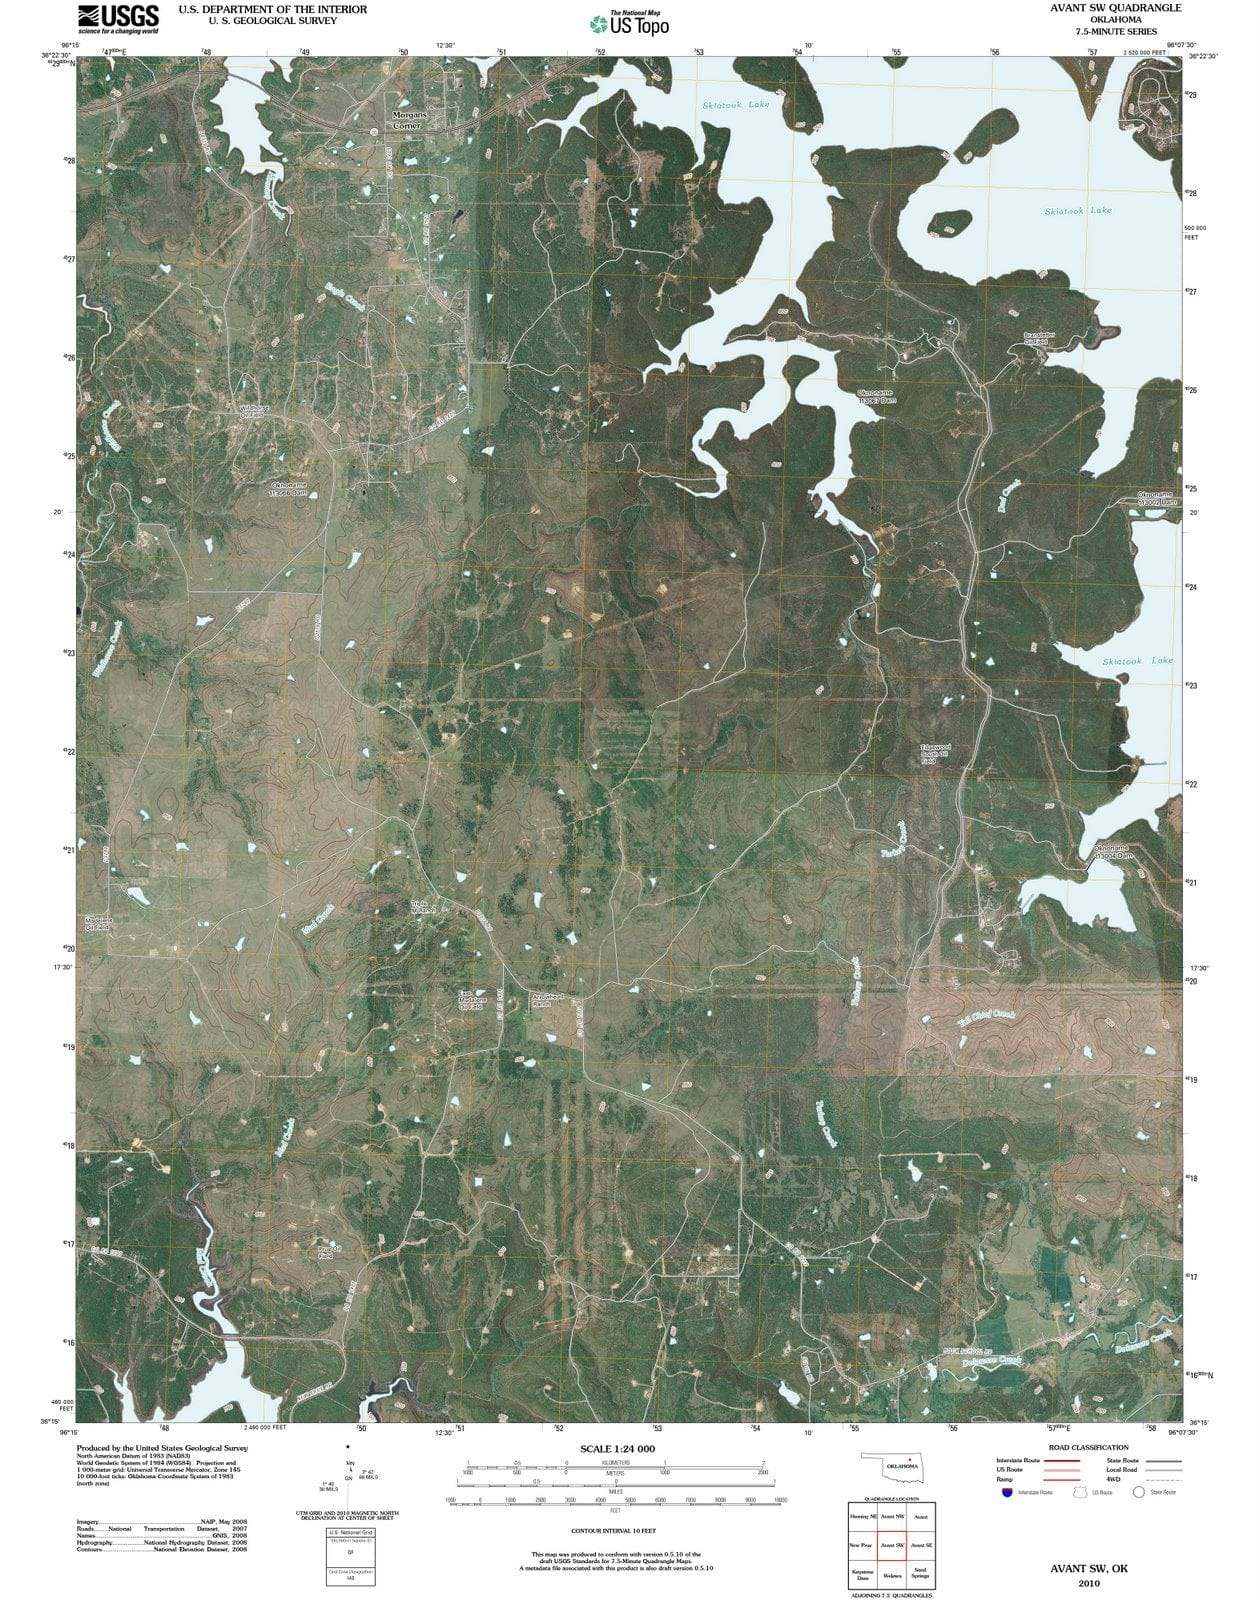 2010 Avant, OK - Oklahoma - USGS Topographic Map